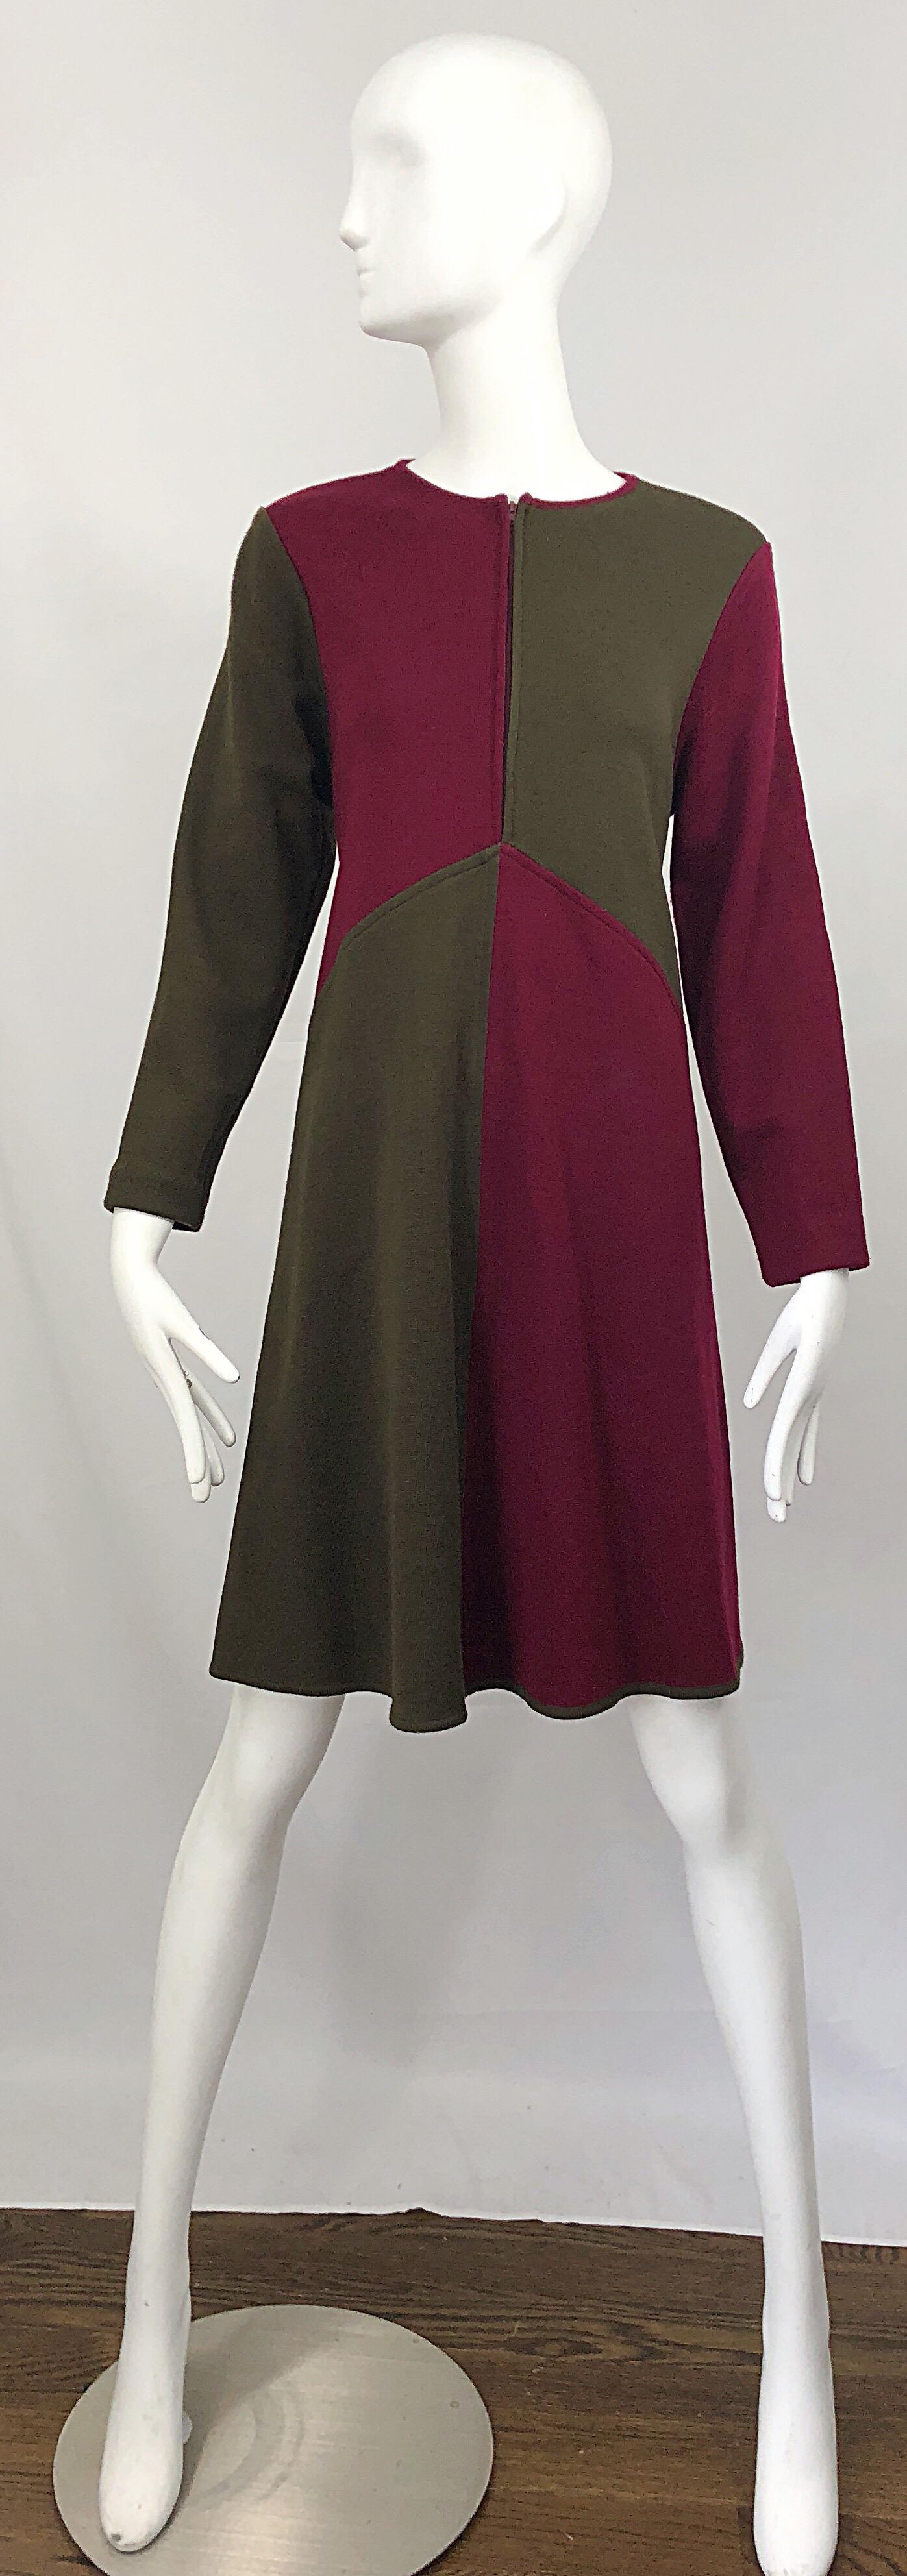 Vintage Harve Benard 1960s Style Maroon Burgundy + Brown Knit Wool Swing Dress For Sale 1